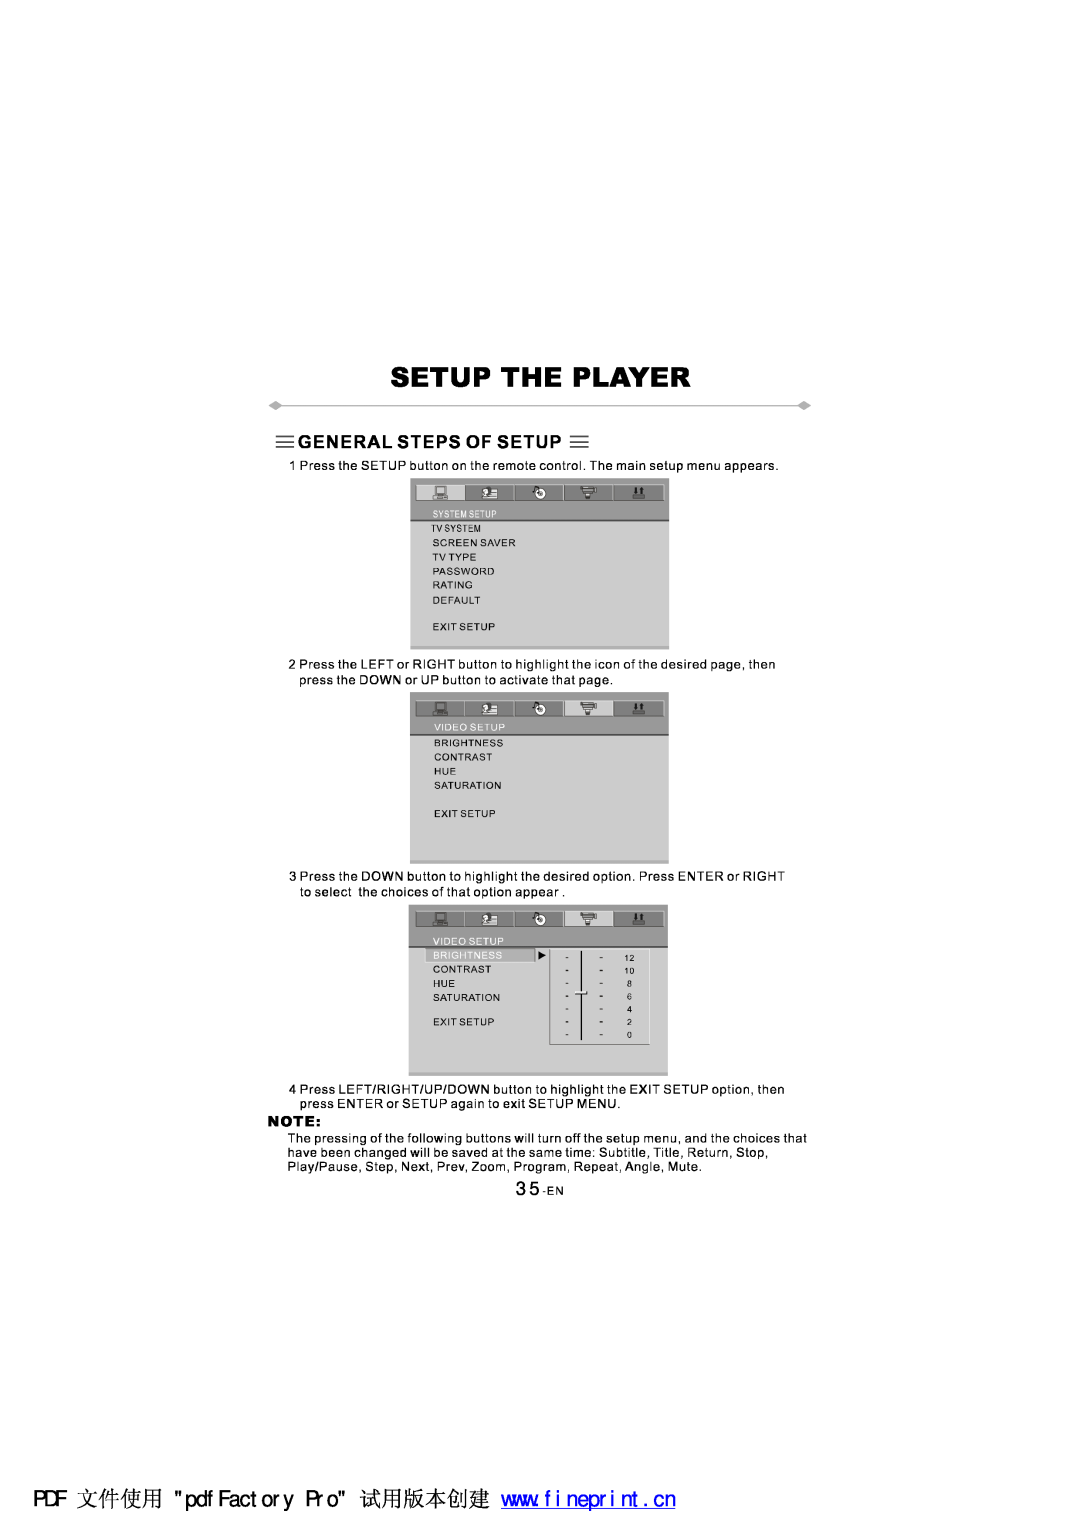 NextBase SDV97-AC manual 35-EN 